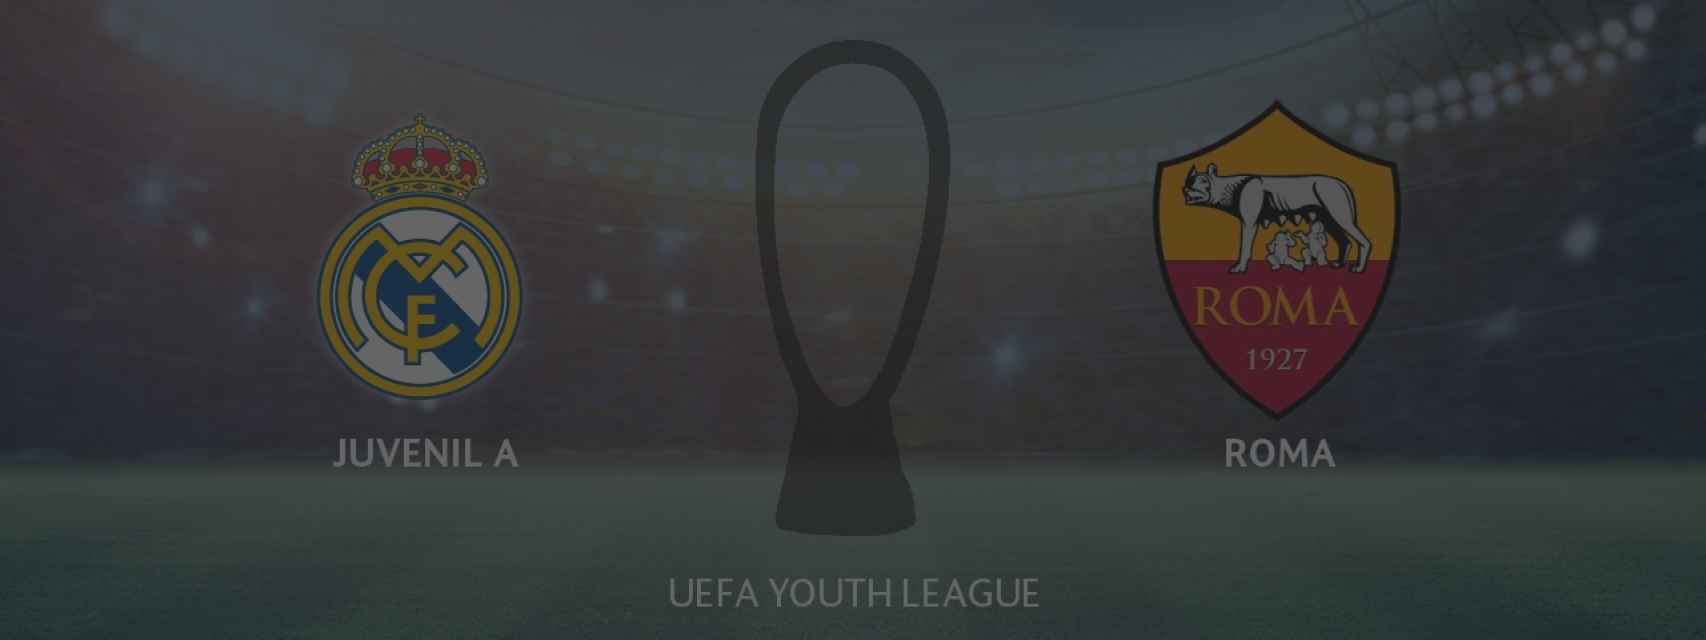 Real Madrid Juvenil A - AS Roma, siga en directo el partido de la Youth League